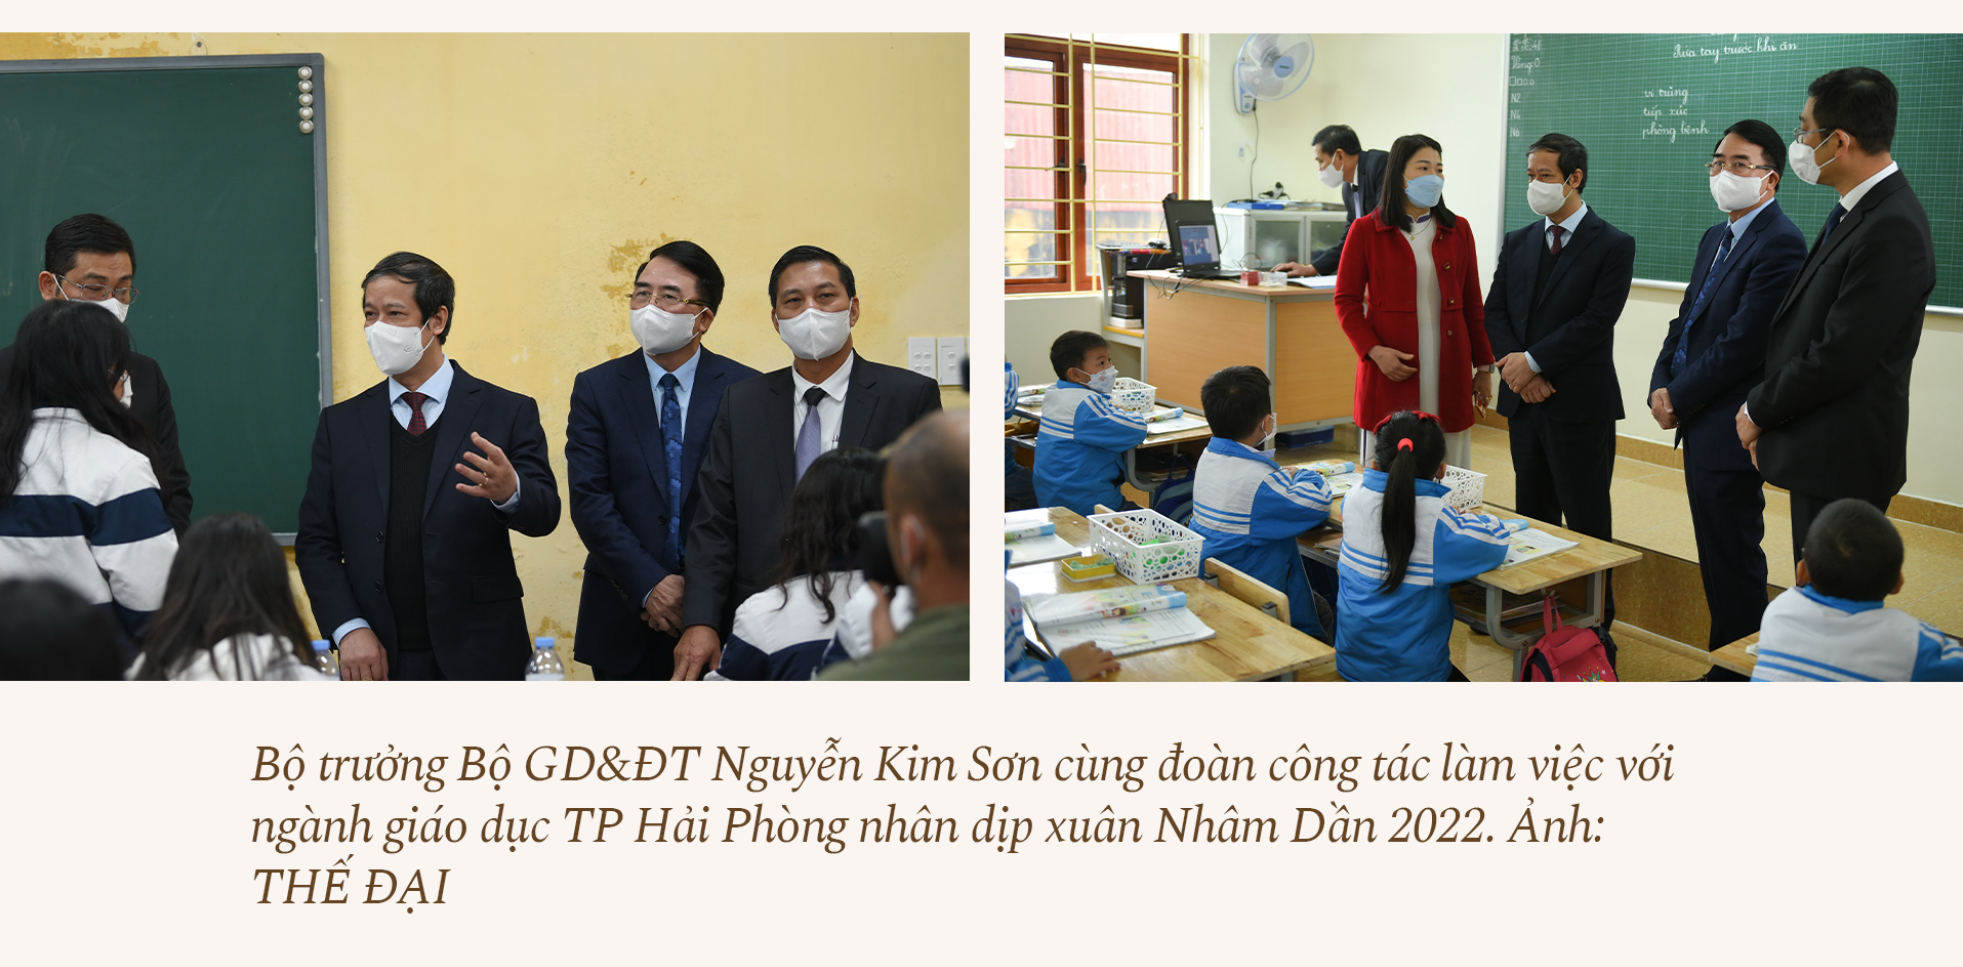 Bộ trưởng Bộ GD&ĐT Nguyễn Kim Sơn: Bù đắp kiến thức, tái thiết giáo dục - ảnh 1